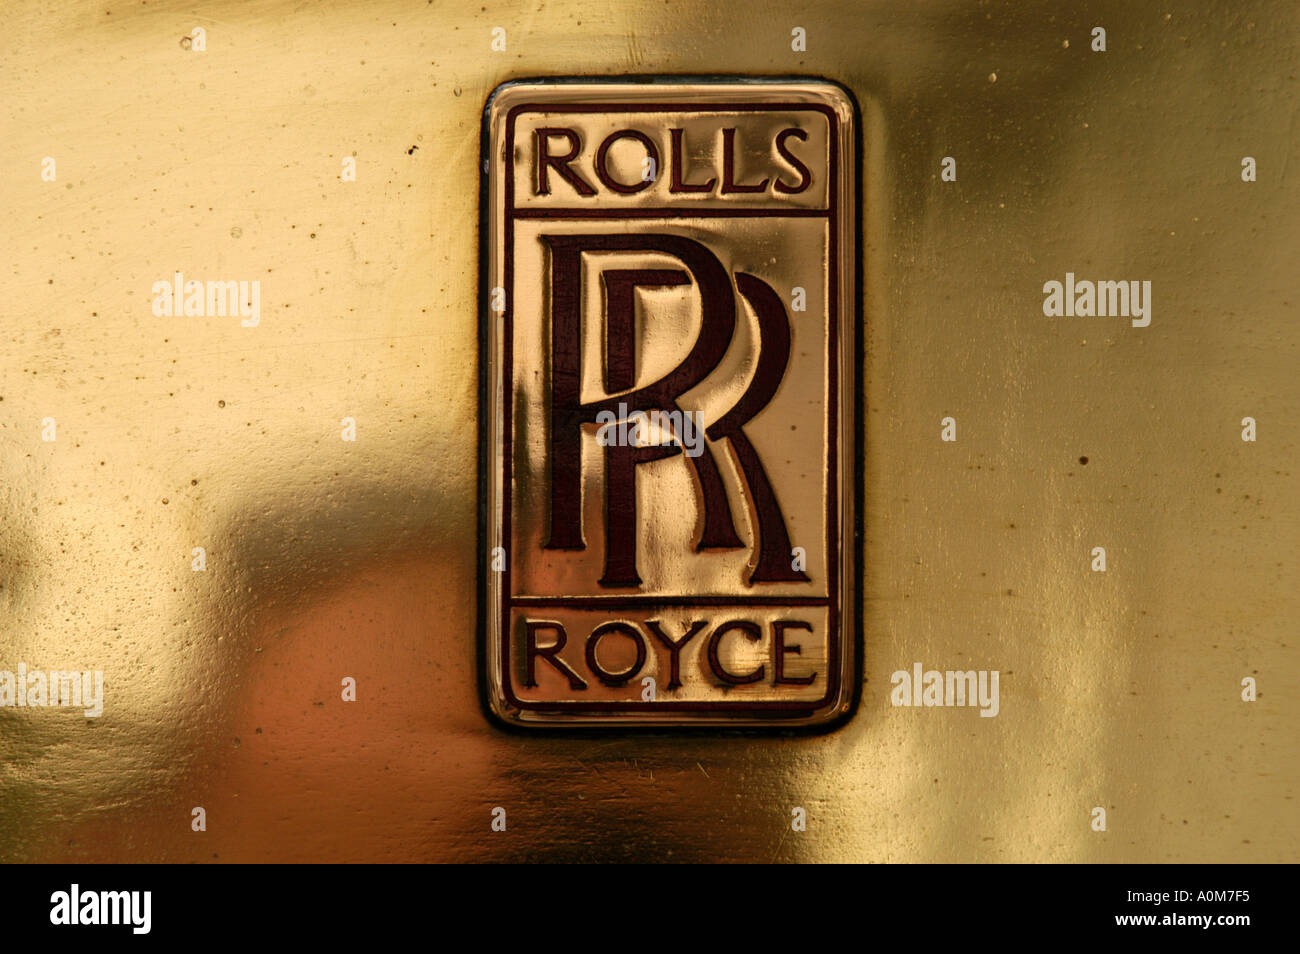 rolls royce logo hd wallpaper